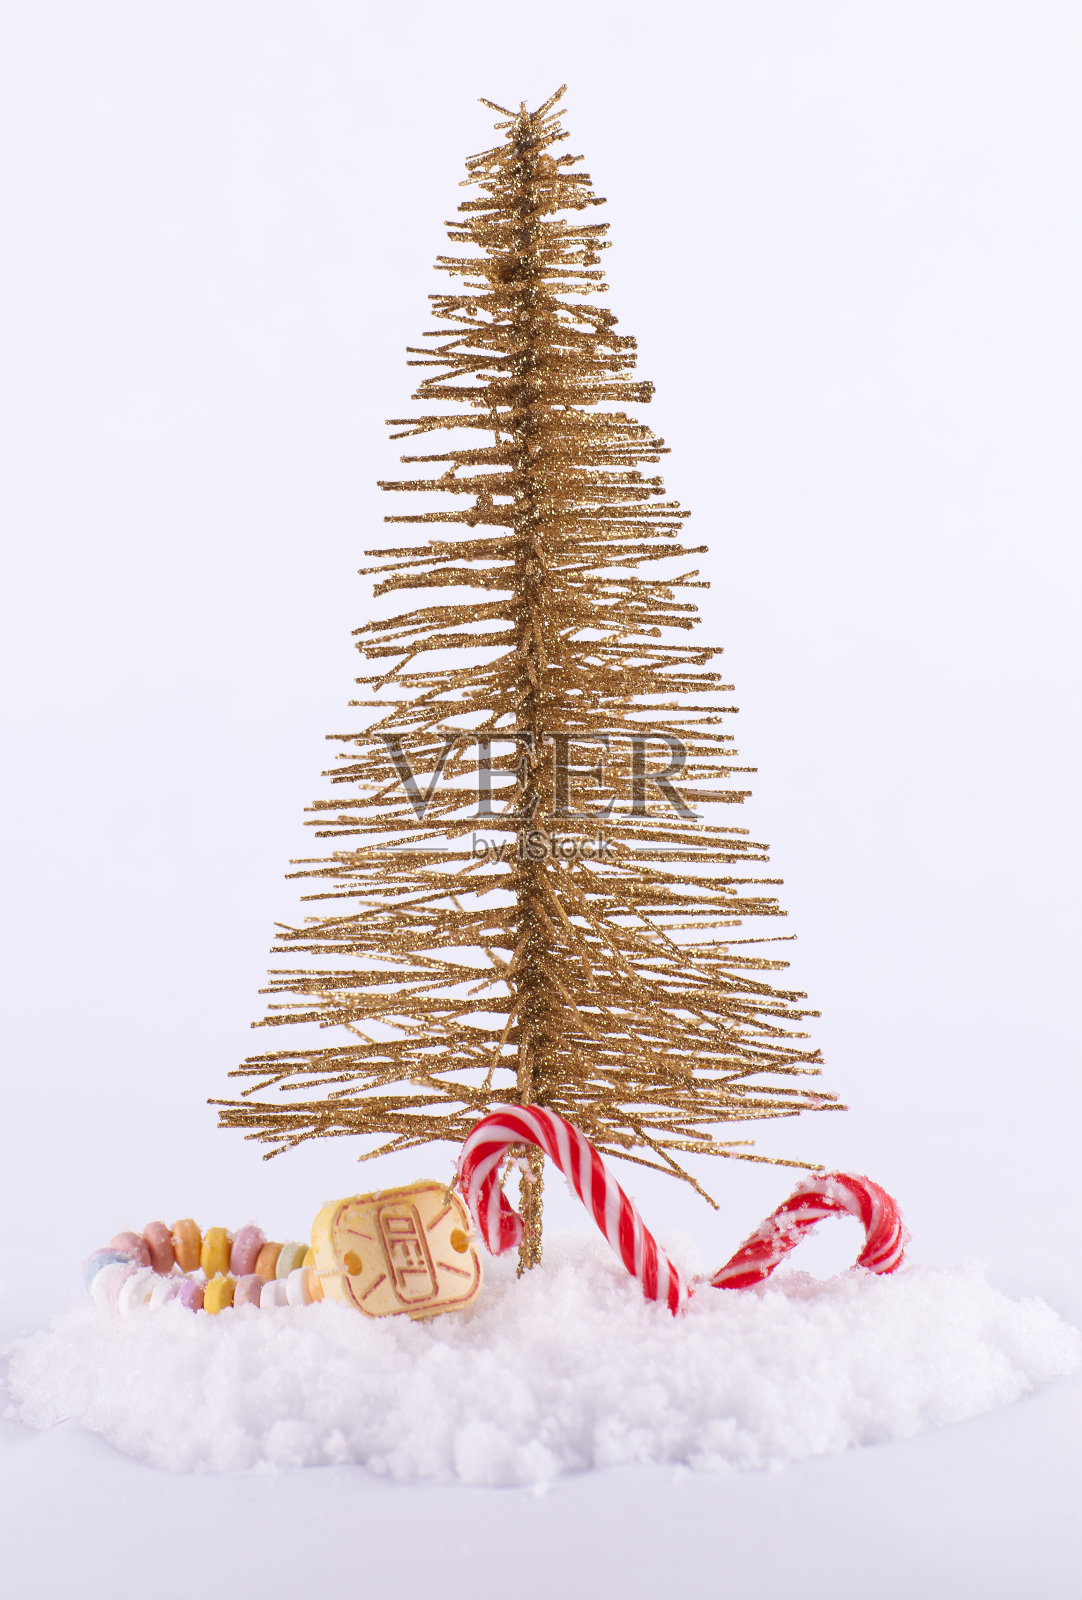 新奇的圣诞树与糖果和白雪的背景照片摄影图片